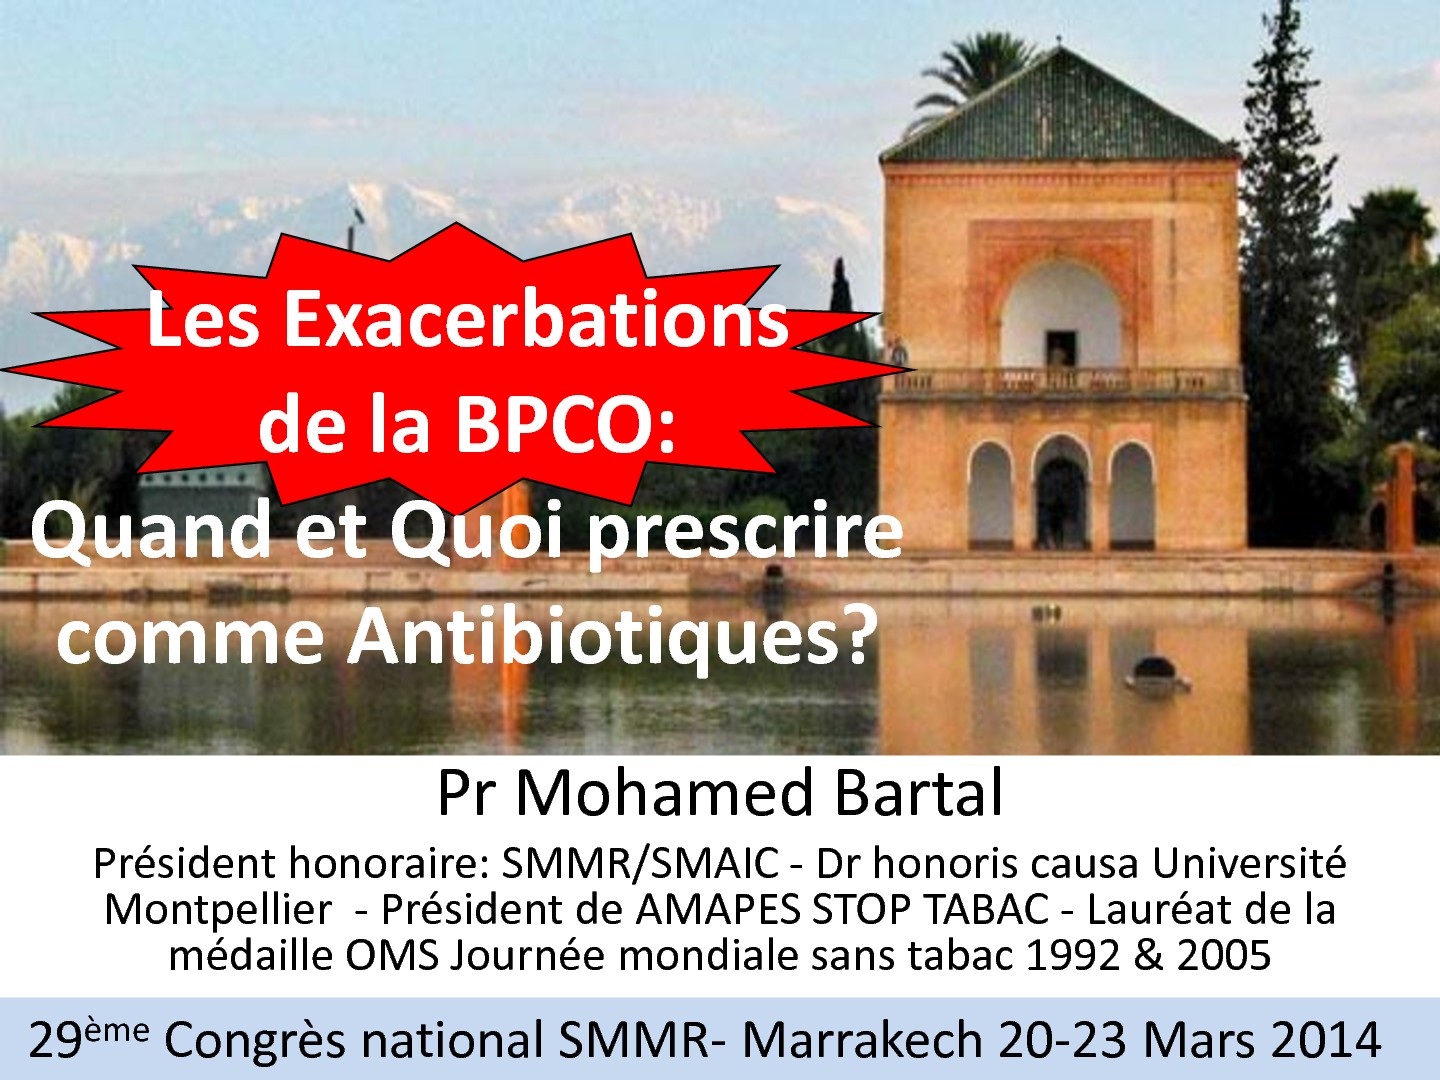 Les Exacerbations de la BPCO, Quand et Quoi prescrire comme Antibiotiques. Mohamed Bartal